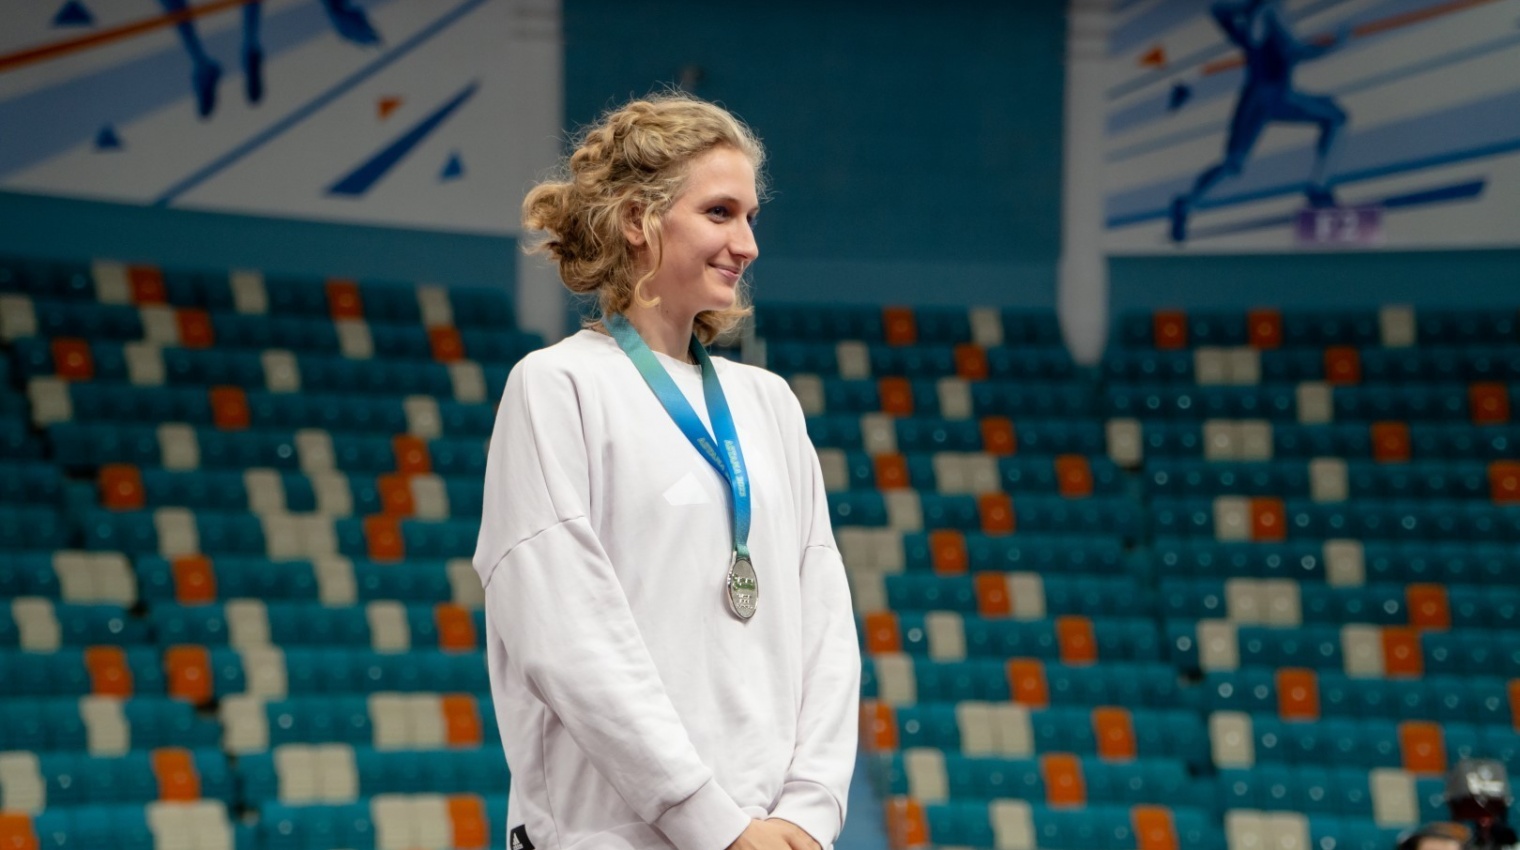 Кристина Овчинникова завоевала золото в прыжках в высоту на международном турнире серии World Athletics Indoor Tour 